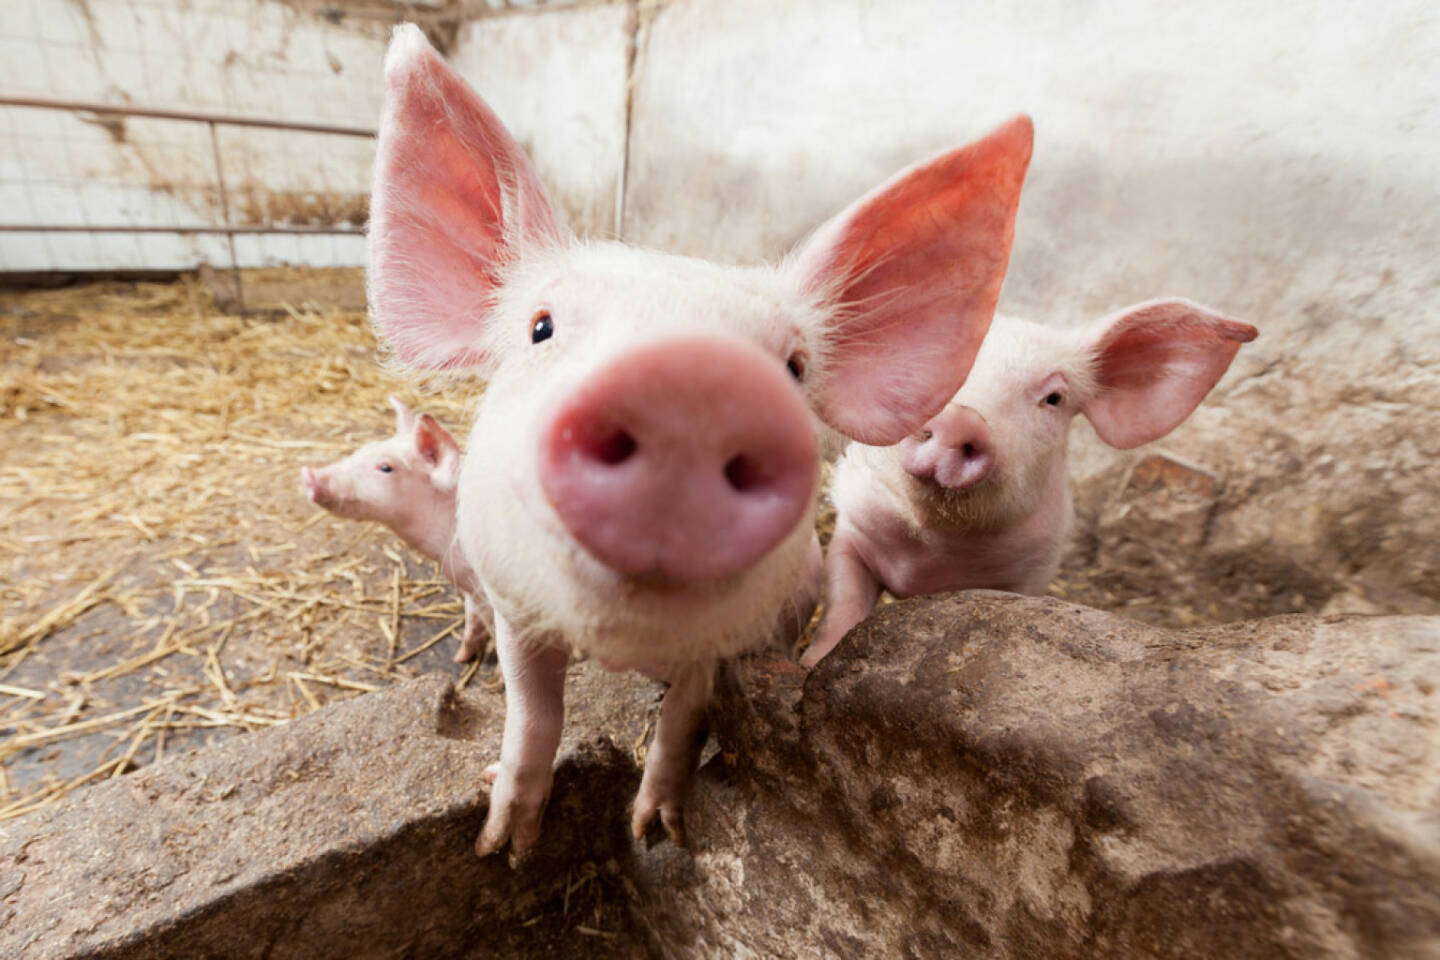 Schwein, Ferkel, Sau, Sauerei, Tier, Fleisch, http://www.shutterstock.com/de/pic-134362790/stock-photo-young-pigs-on-the-farm.html 